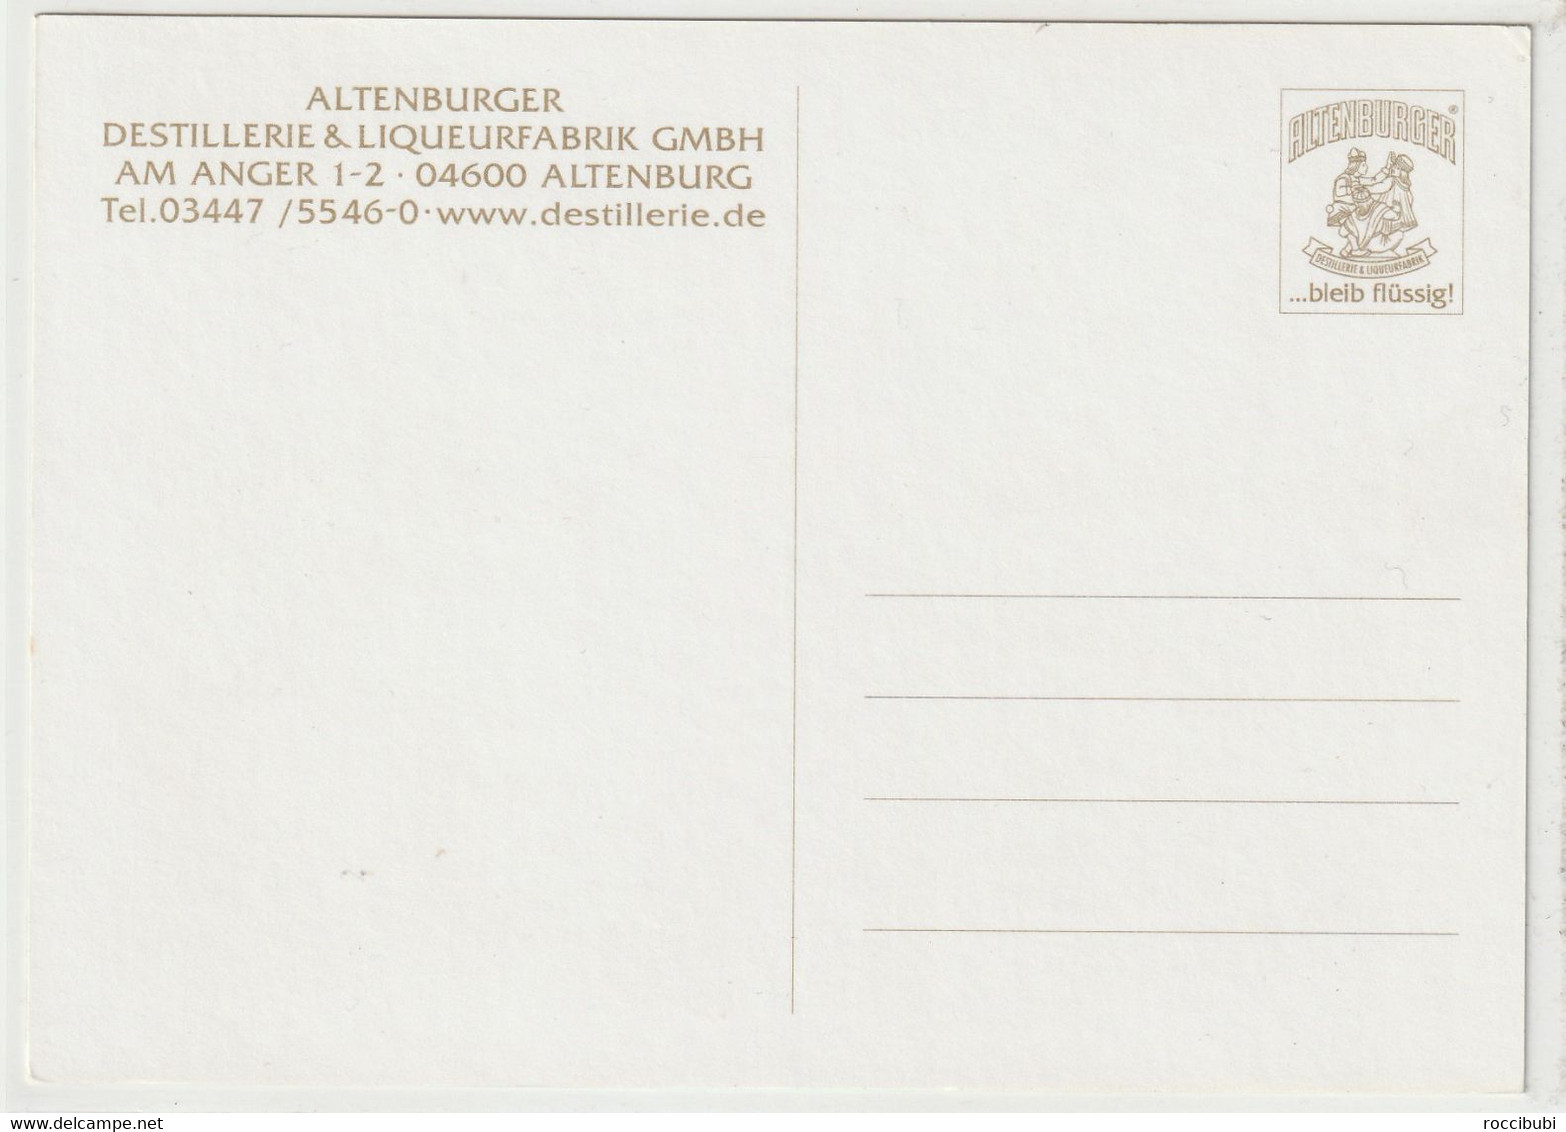 Altenburg, Destillerie & Liqueurfabrik - Altenburg